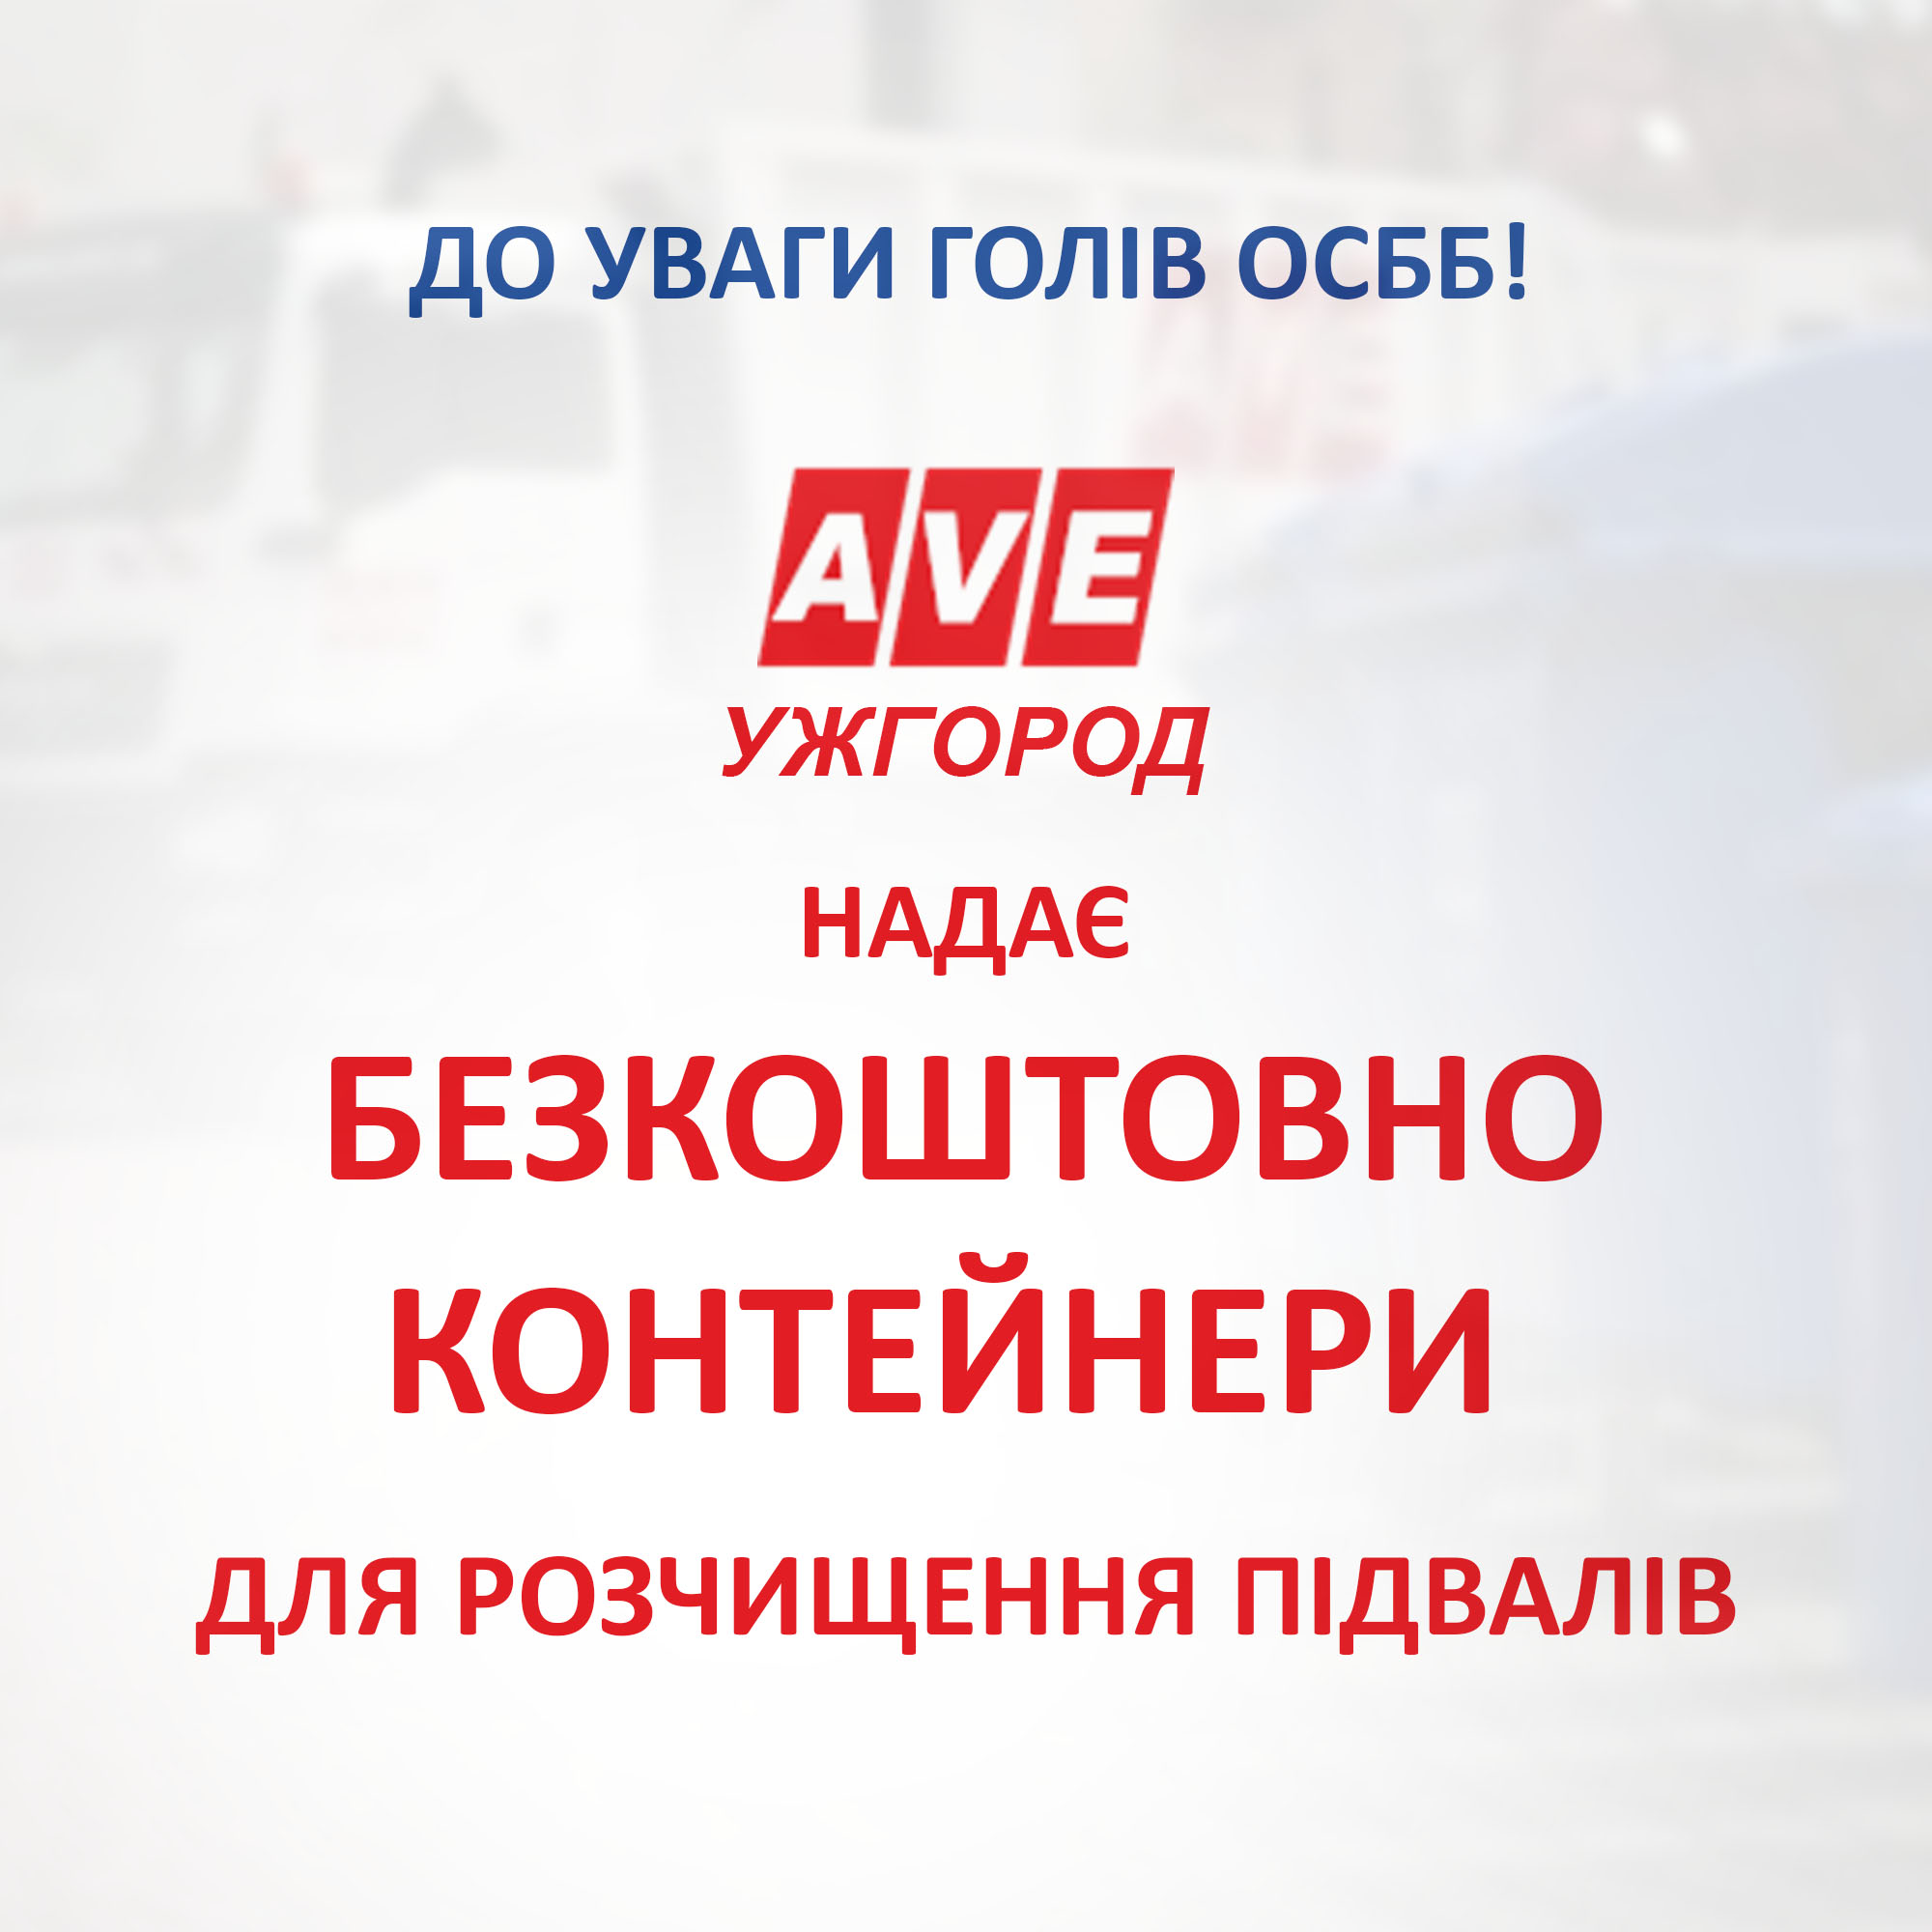 “АВЕ Ужгород” безкоштовно надає контейнери для розчищення підвалів